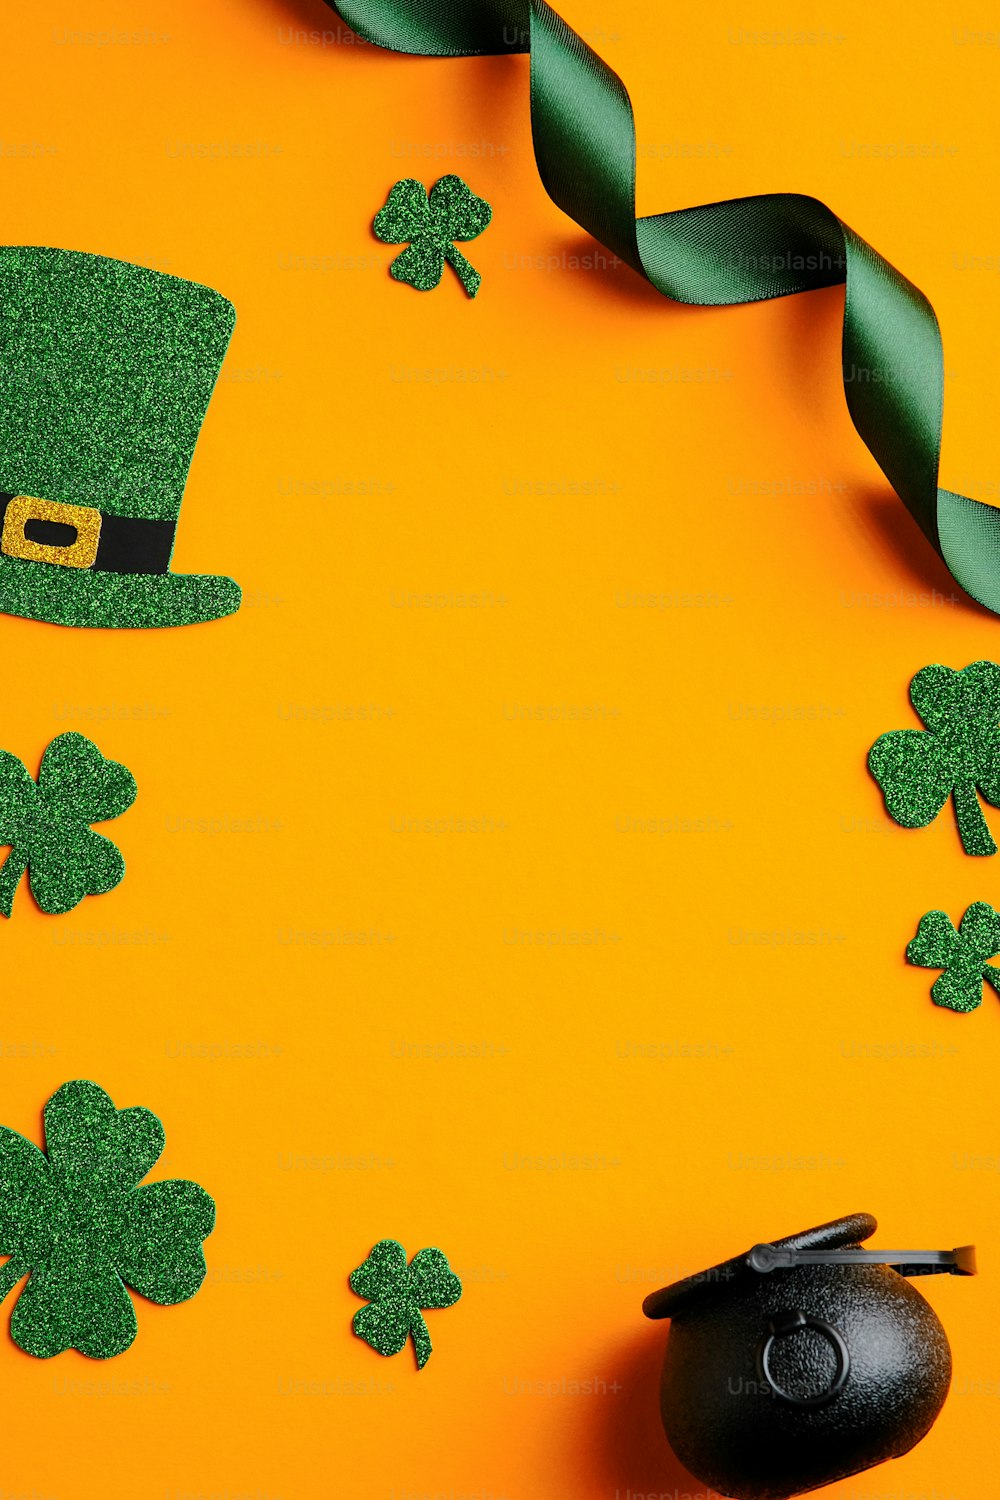 Hãy cùng chiêm ngưỡng những thiết kế banner St Patricks day đặc sắc để bắt đầu chuẩn bị cho bữa tiệc thật sự đáng nhớ. Với sức hấp dẫn của những hình ảnh đầy màu sắc và ý tưởng sáng tạo, bạn sẽ chắc chắn tìm được ý tưởng hoàn hảo cho mình.